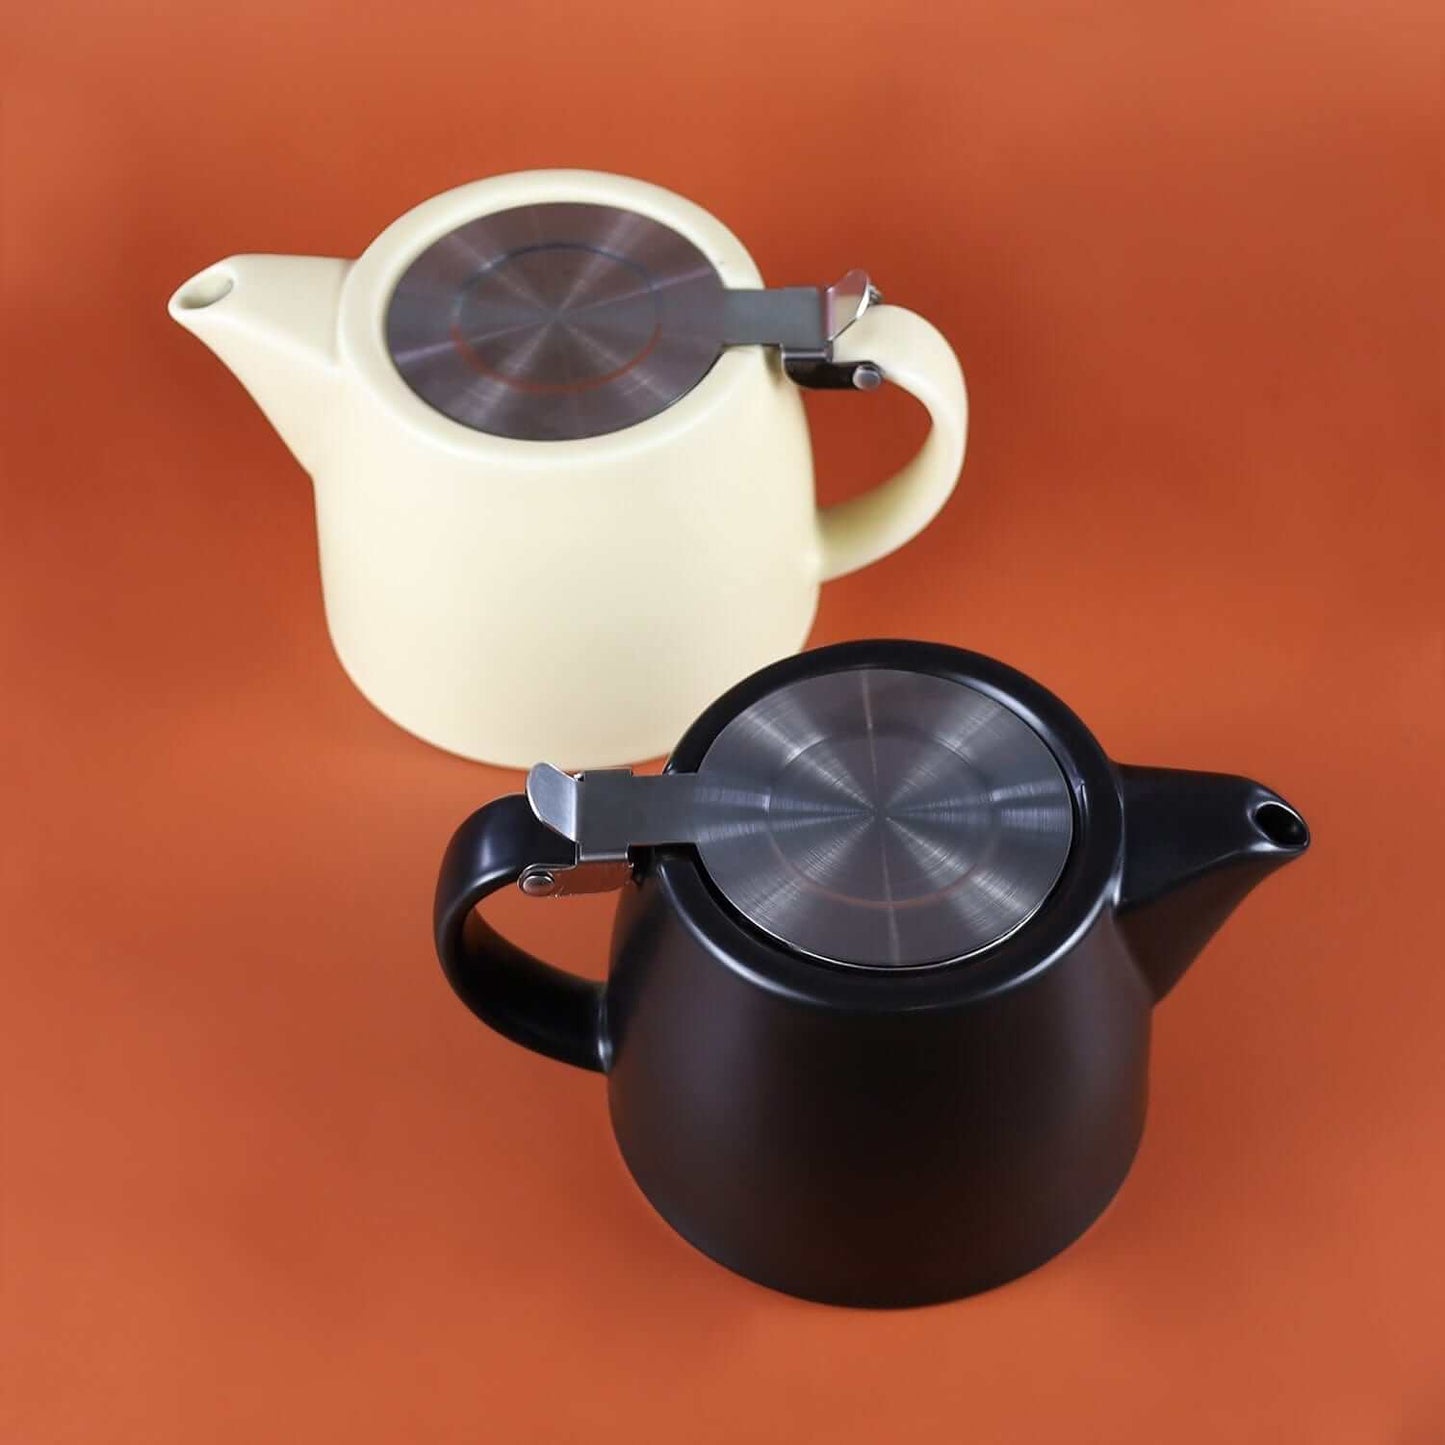 The Nordic Teapot: Black